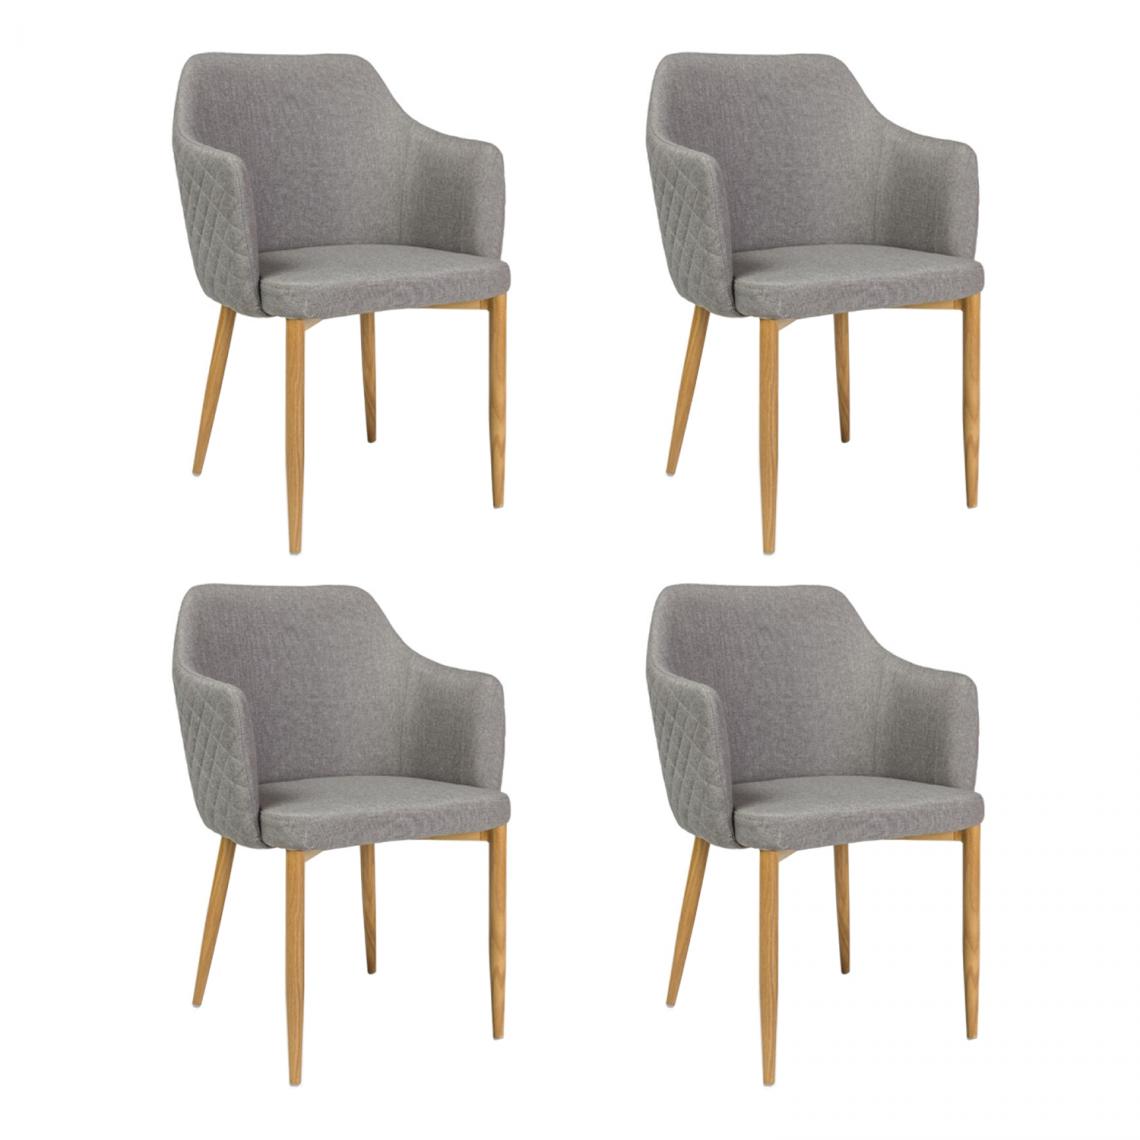 Hucoco - ASTOP - Lot de 4 chaise style glamour - 84x46x46 cm - Tissu haute qualité - Chaise élégante - Gris - Chaises